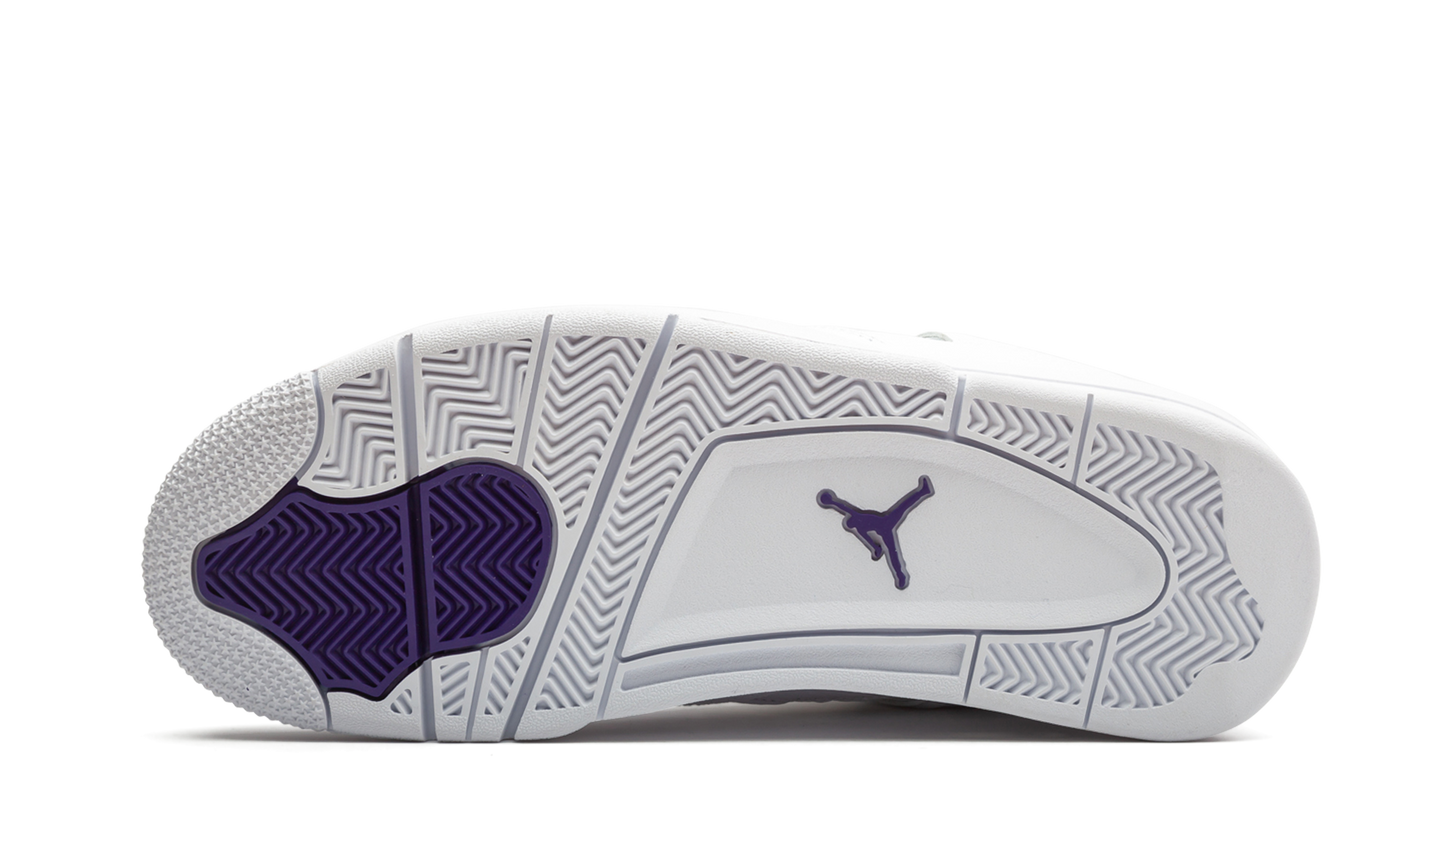 Air Jordan 4 Retro “Metallic Pack - Purple” - CT8527 115 | Grailshop